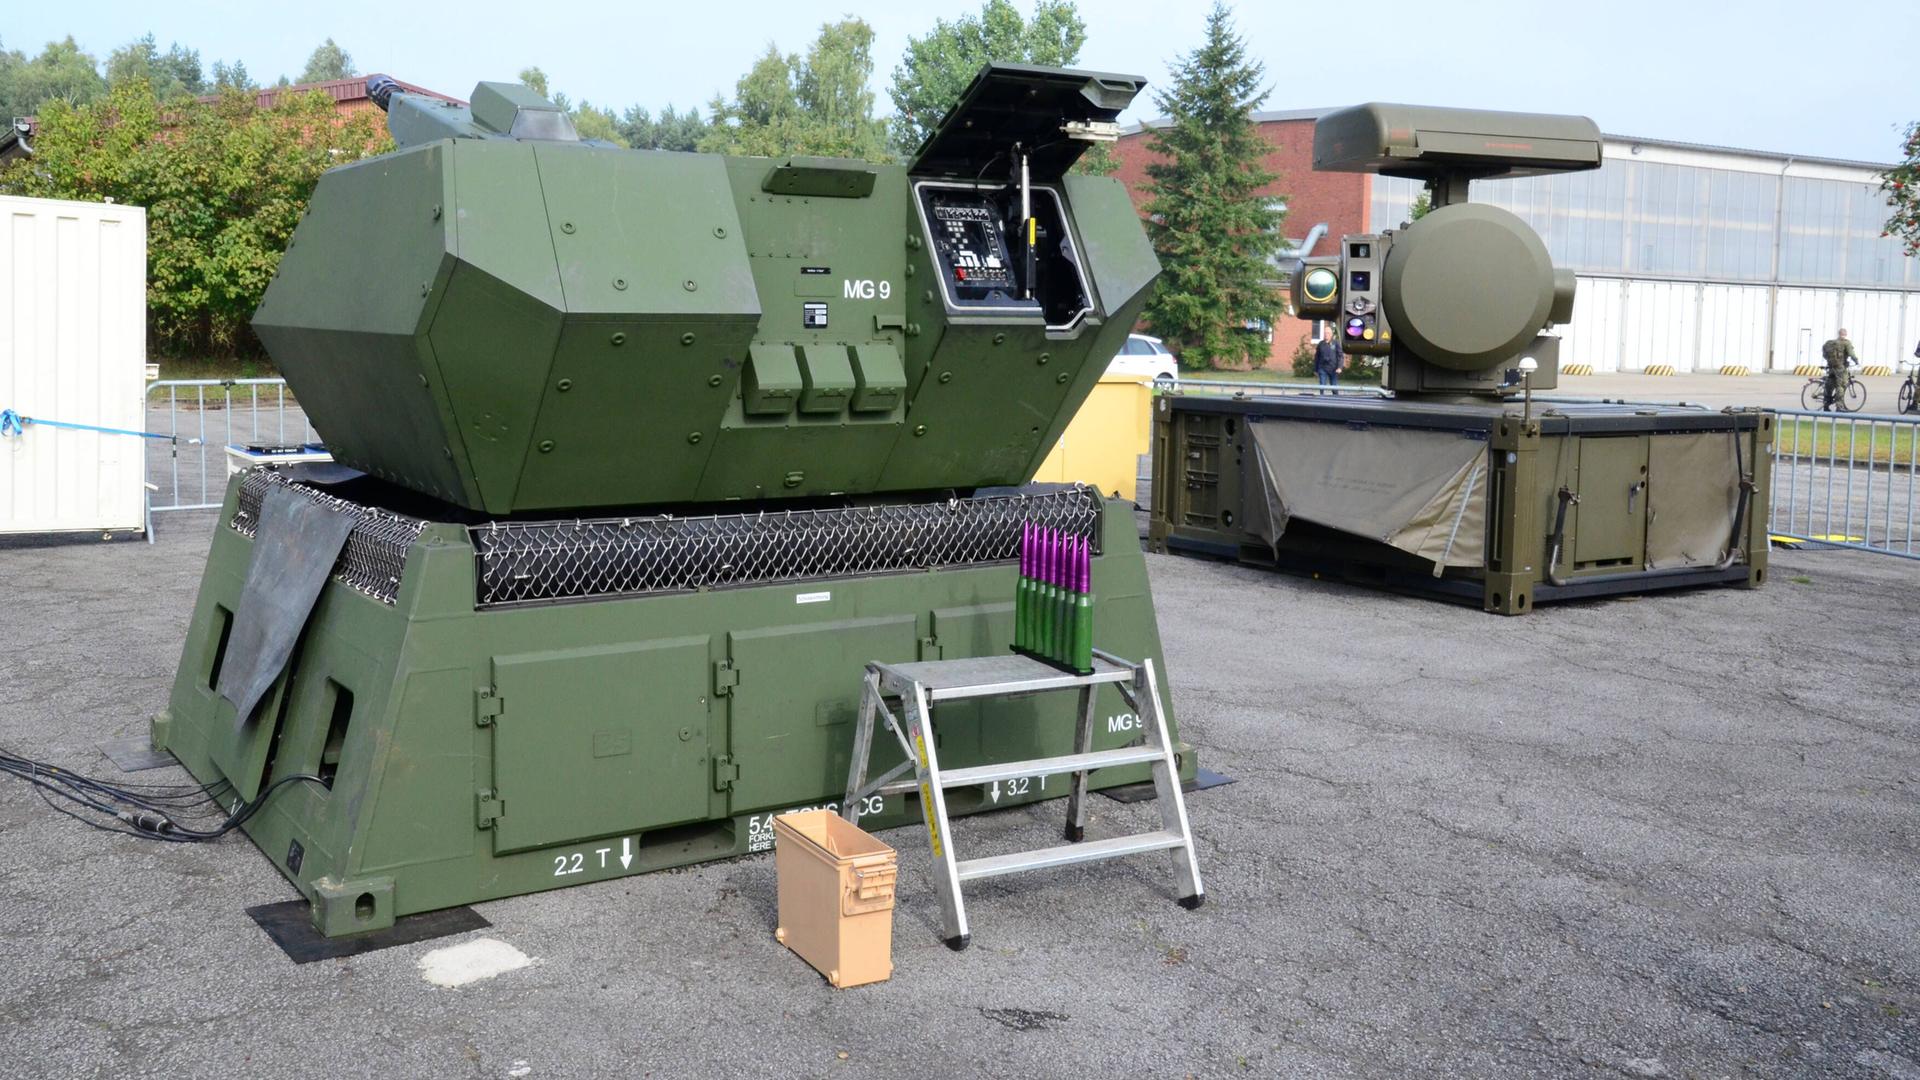 Das Foto zeigt das MANTIS Flugabwehrsystem der Bundeswehr. Es besteht aus dem Geschützmodul und dem Radarmodul.